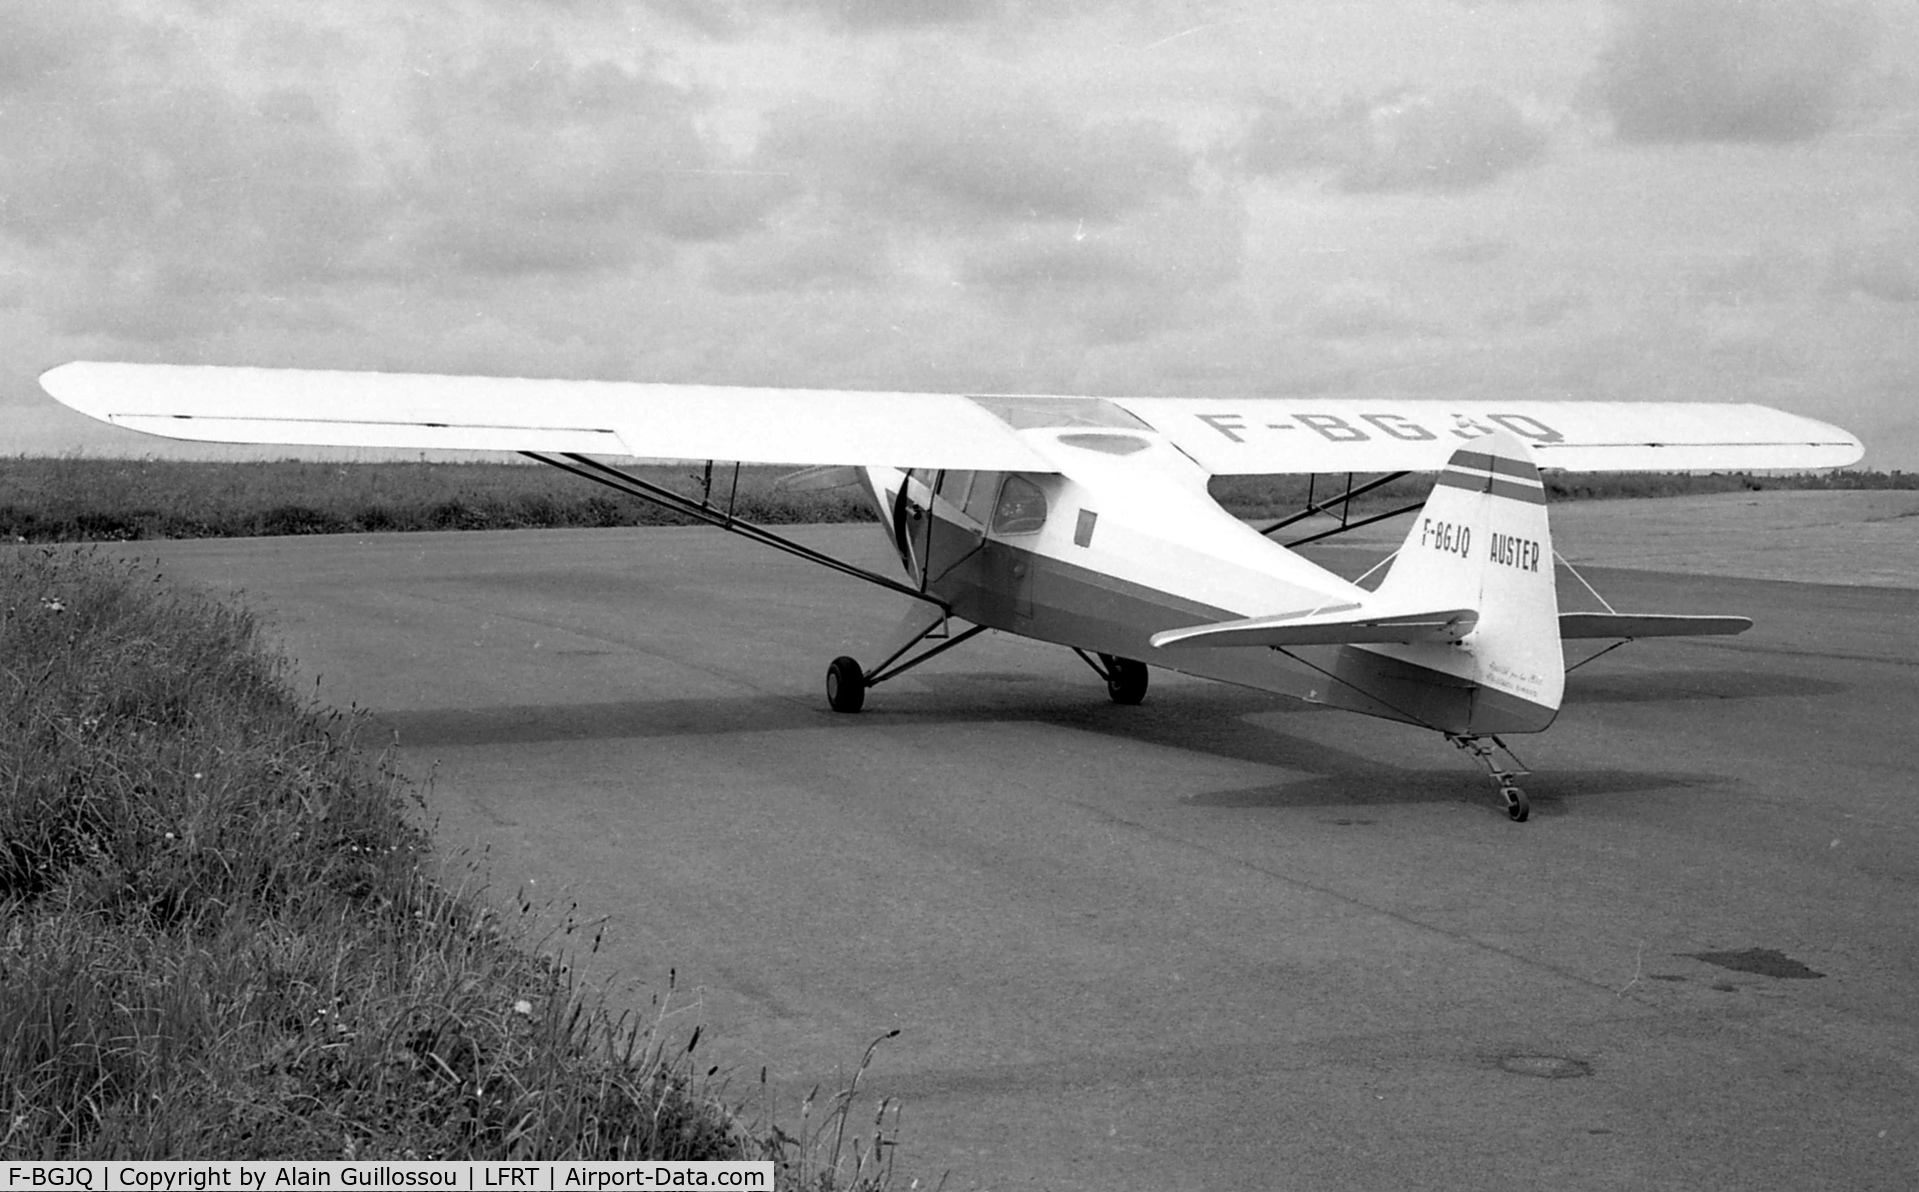 F-BGJQ, 1946 Auster J-2 Arrow C/N 2378, Owner in 1965 : Aéroclub des Côtes du Nord